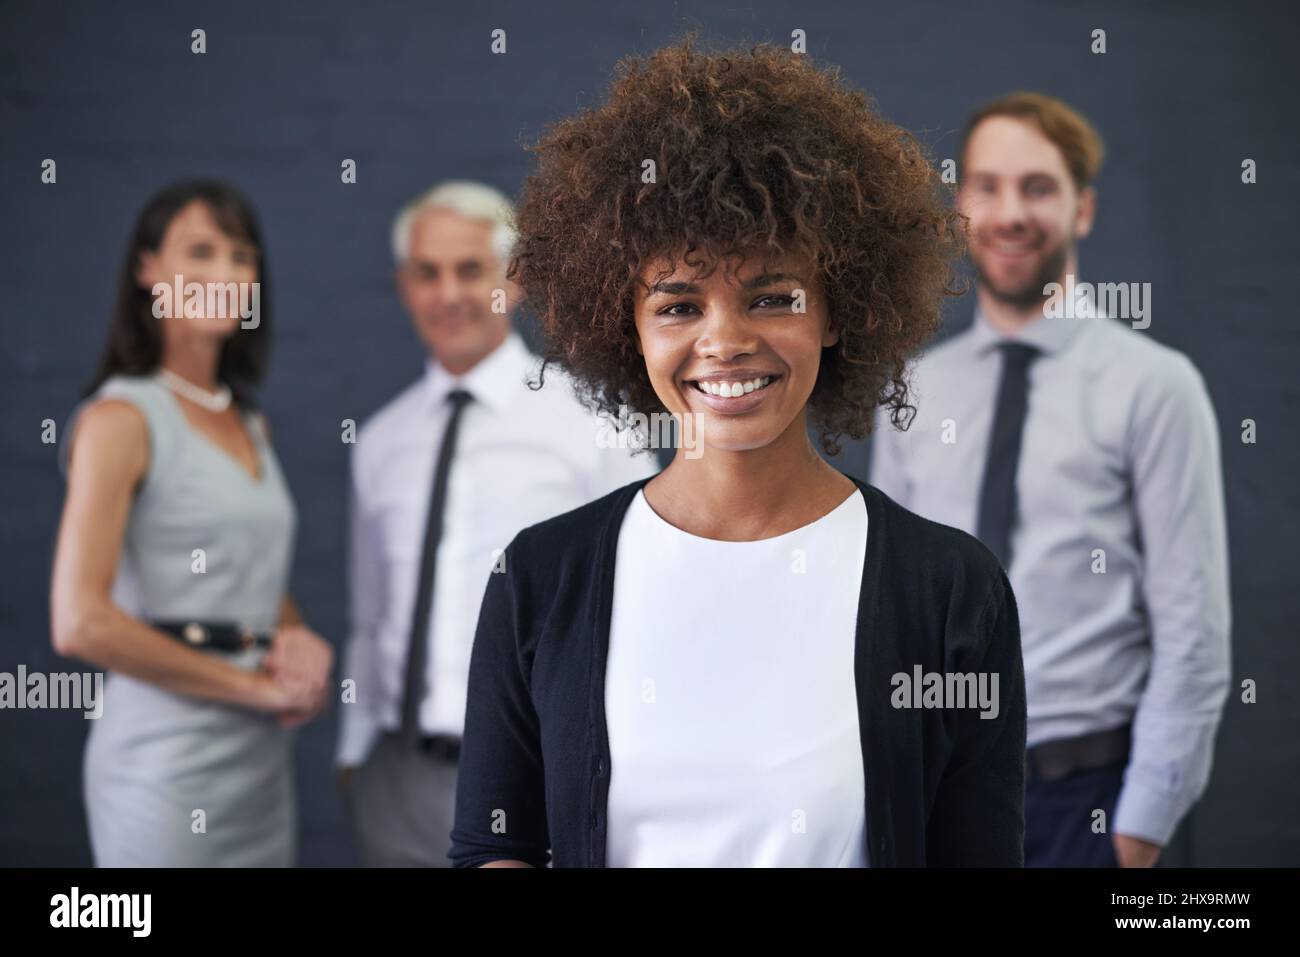 Das Team, das immer seine Ziele übertrifft. Aufnahme einer jungen professionellen Frau, die vor einer Gruppe von Mitarbeitern steht. Stockfoto